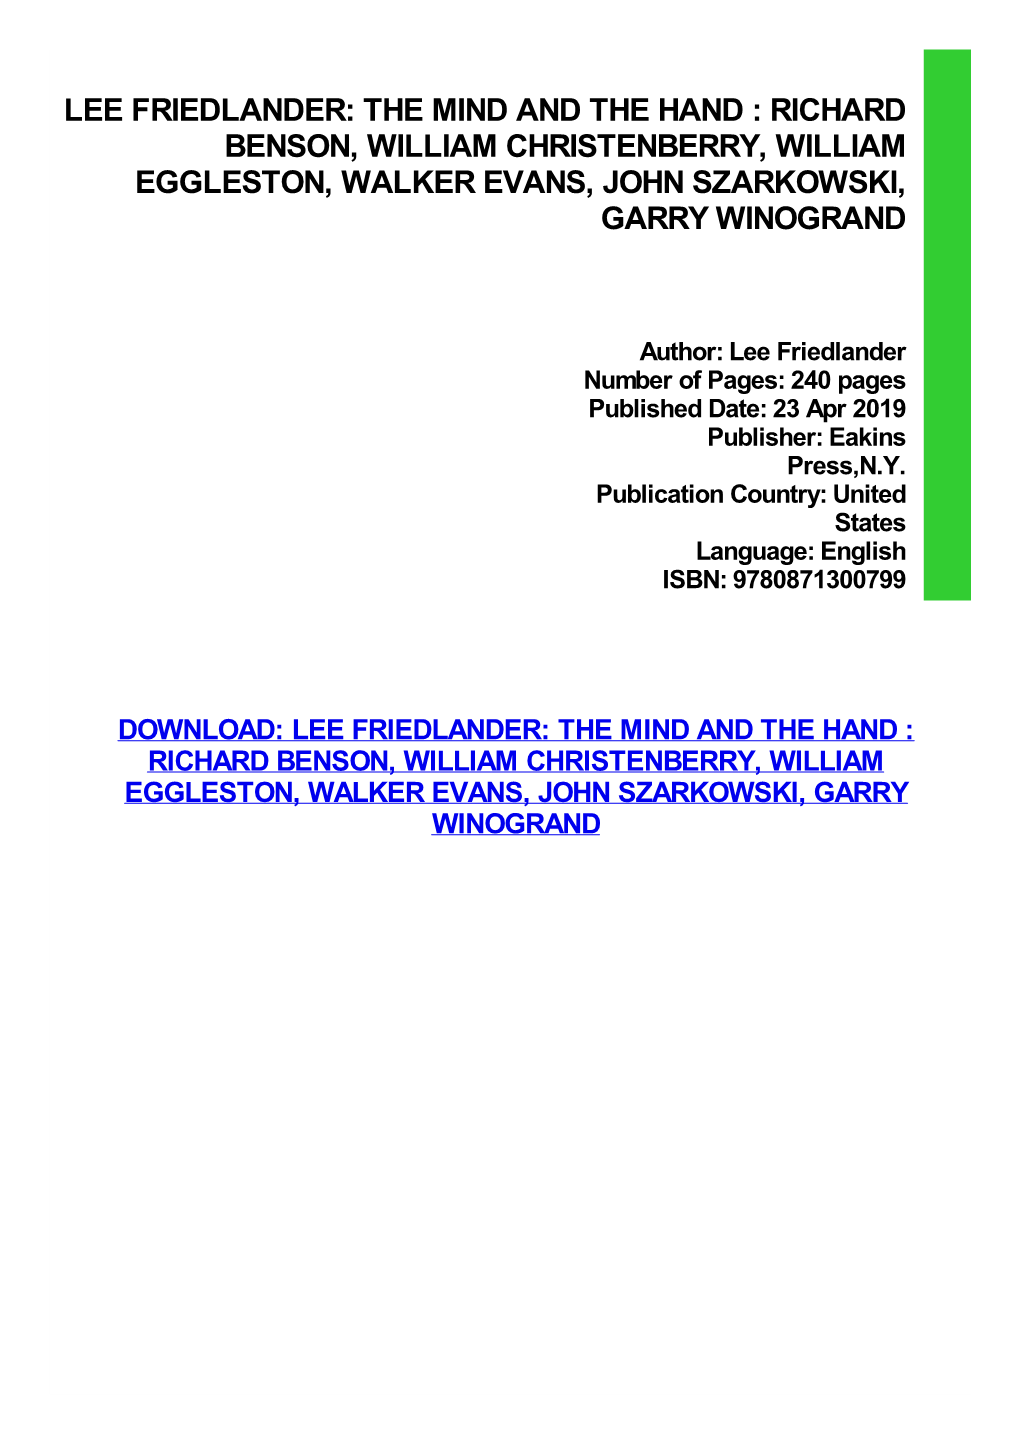 Lee Friedlander: the Mind and the Hand : Richard Benson, William Christenberry, William Eggleston, Walker Evans, John Szarkowski, Garry Winogrand